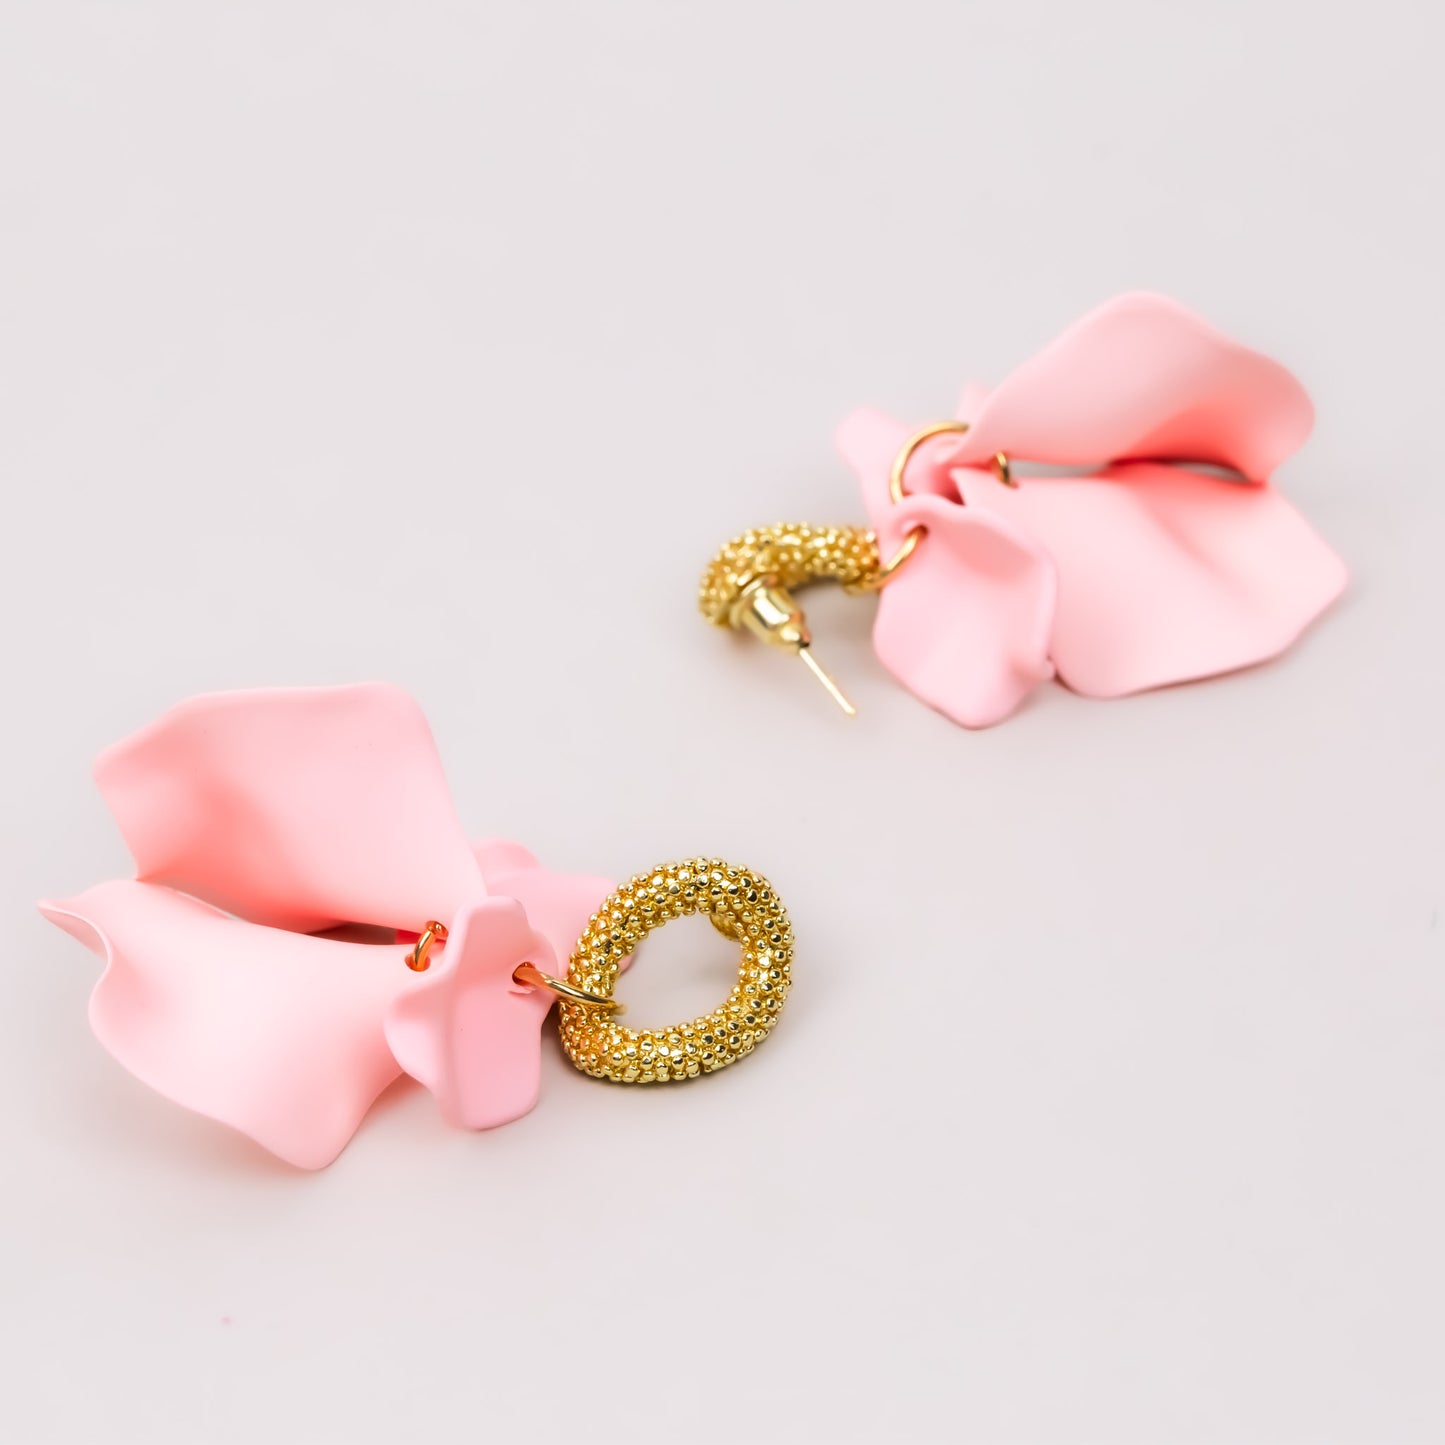 Cercei cu petale fine siliconate - Roz, Auriu